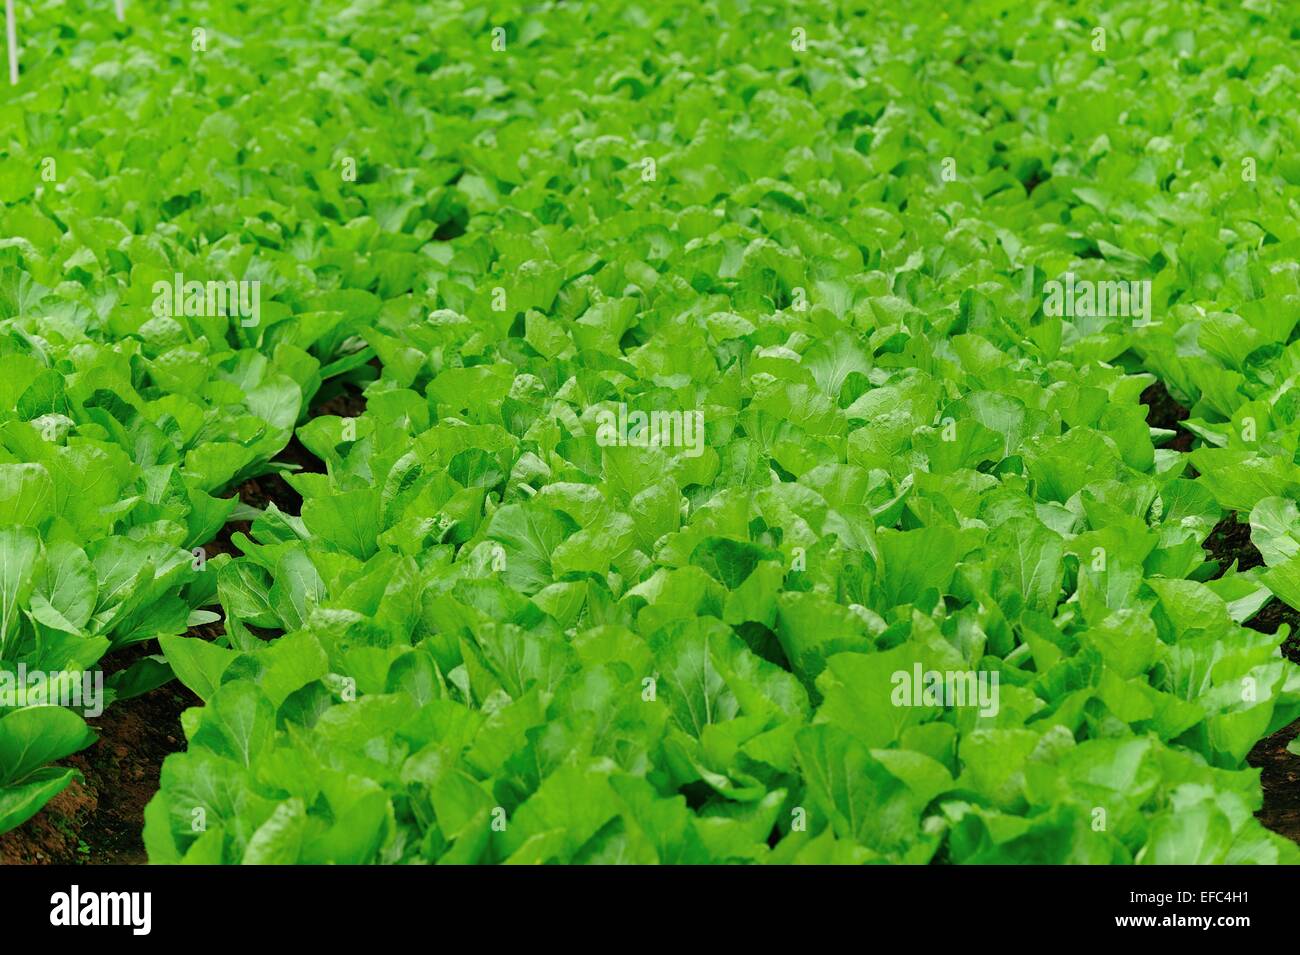 La croissance des plantes de moutarde feuille verte à garden Banque D'Images